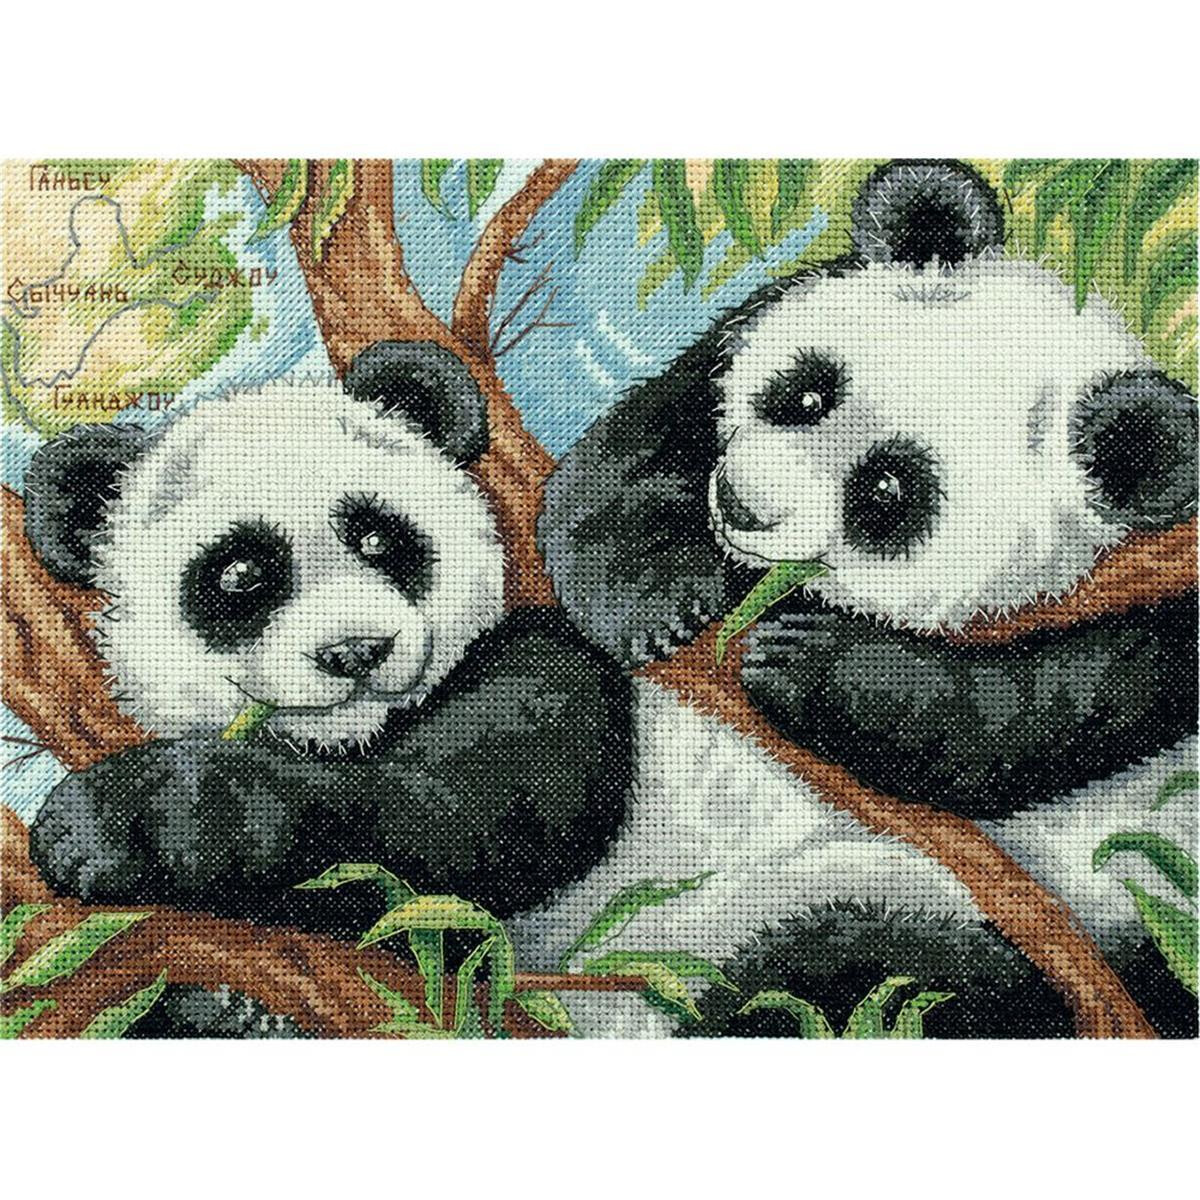 Panna counted cross stitch kit "Panda Bears"...